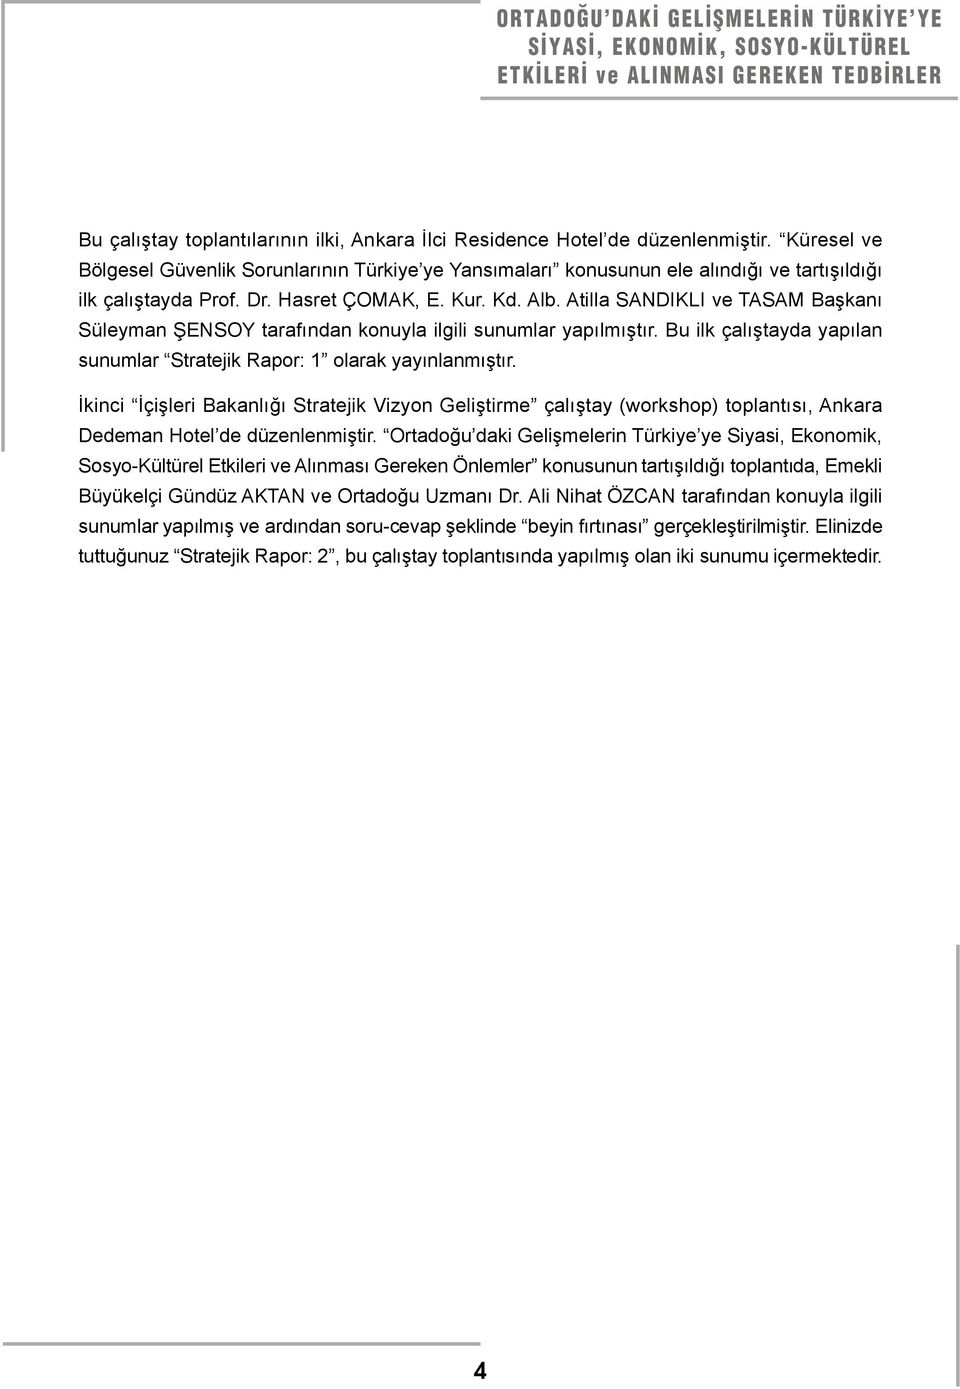 Atilla SANDIKLI ve TASAM Başkanı Süleyman ŞENSOY tarafından konuyla ilgili sunumlar yapılmıştır. Bu ilk çalıştayda yapılan sunumlar Stratejik Rapor: 1 olarak yayınlanmıştır.